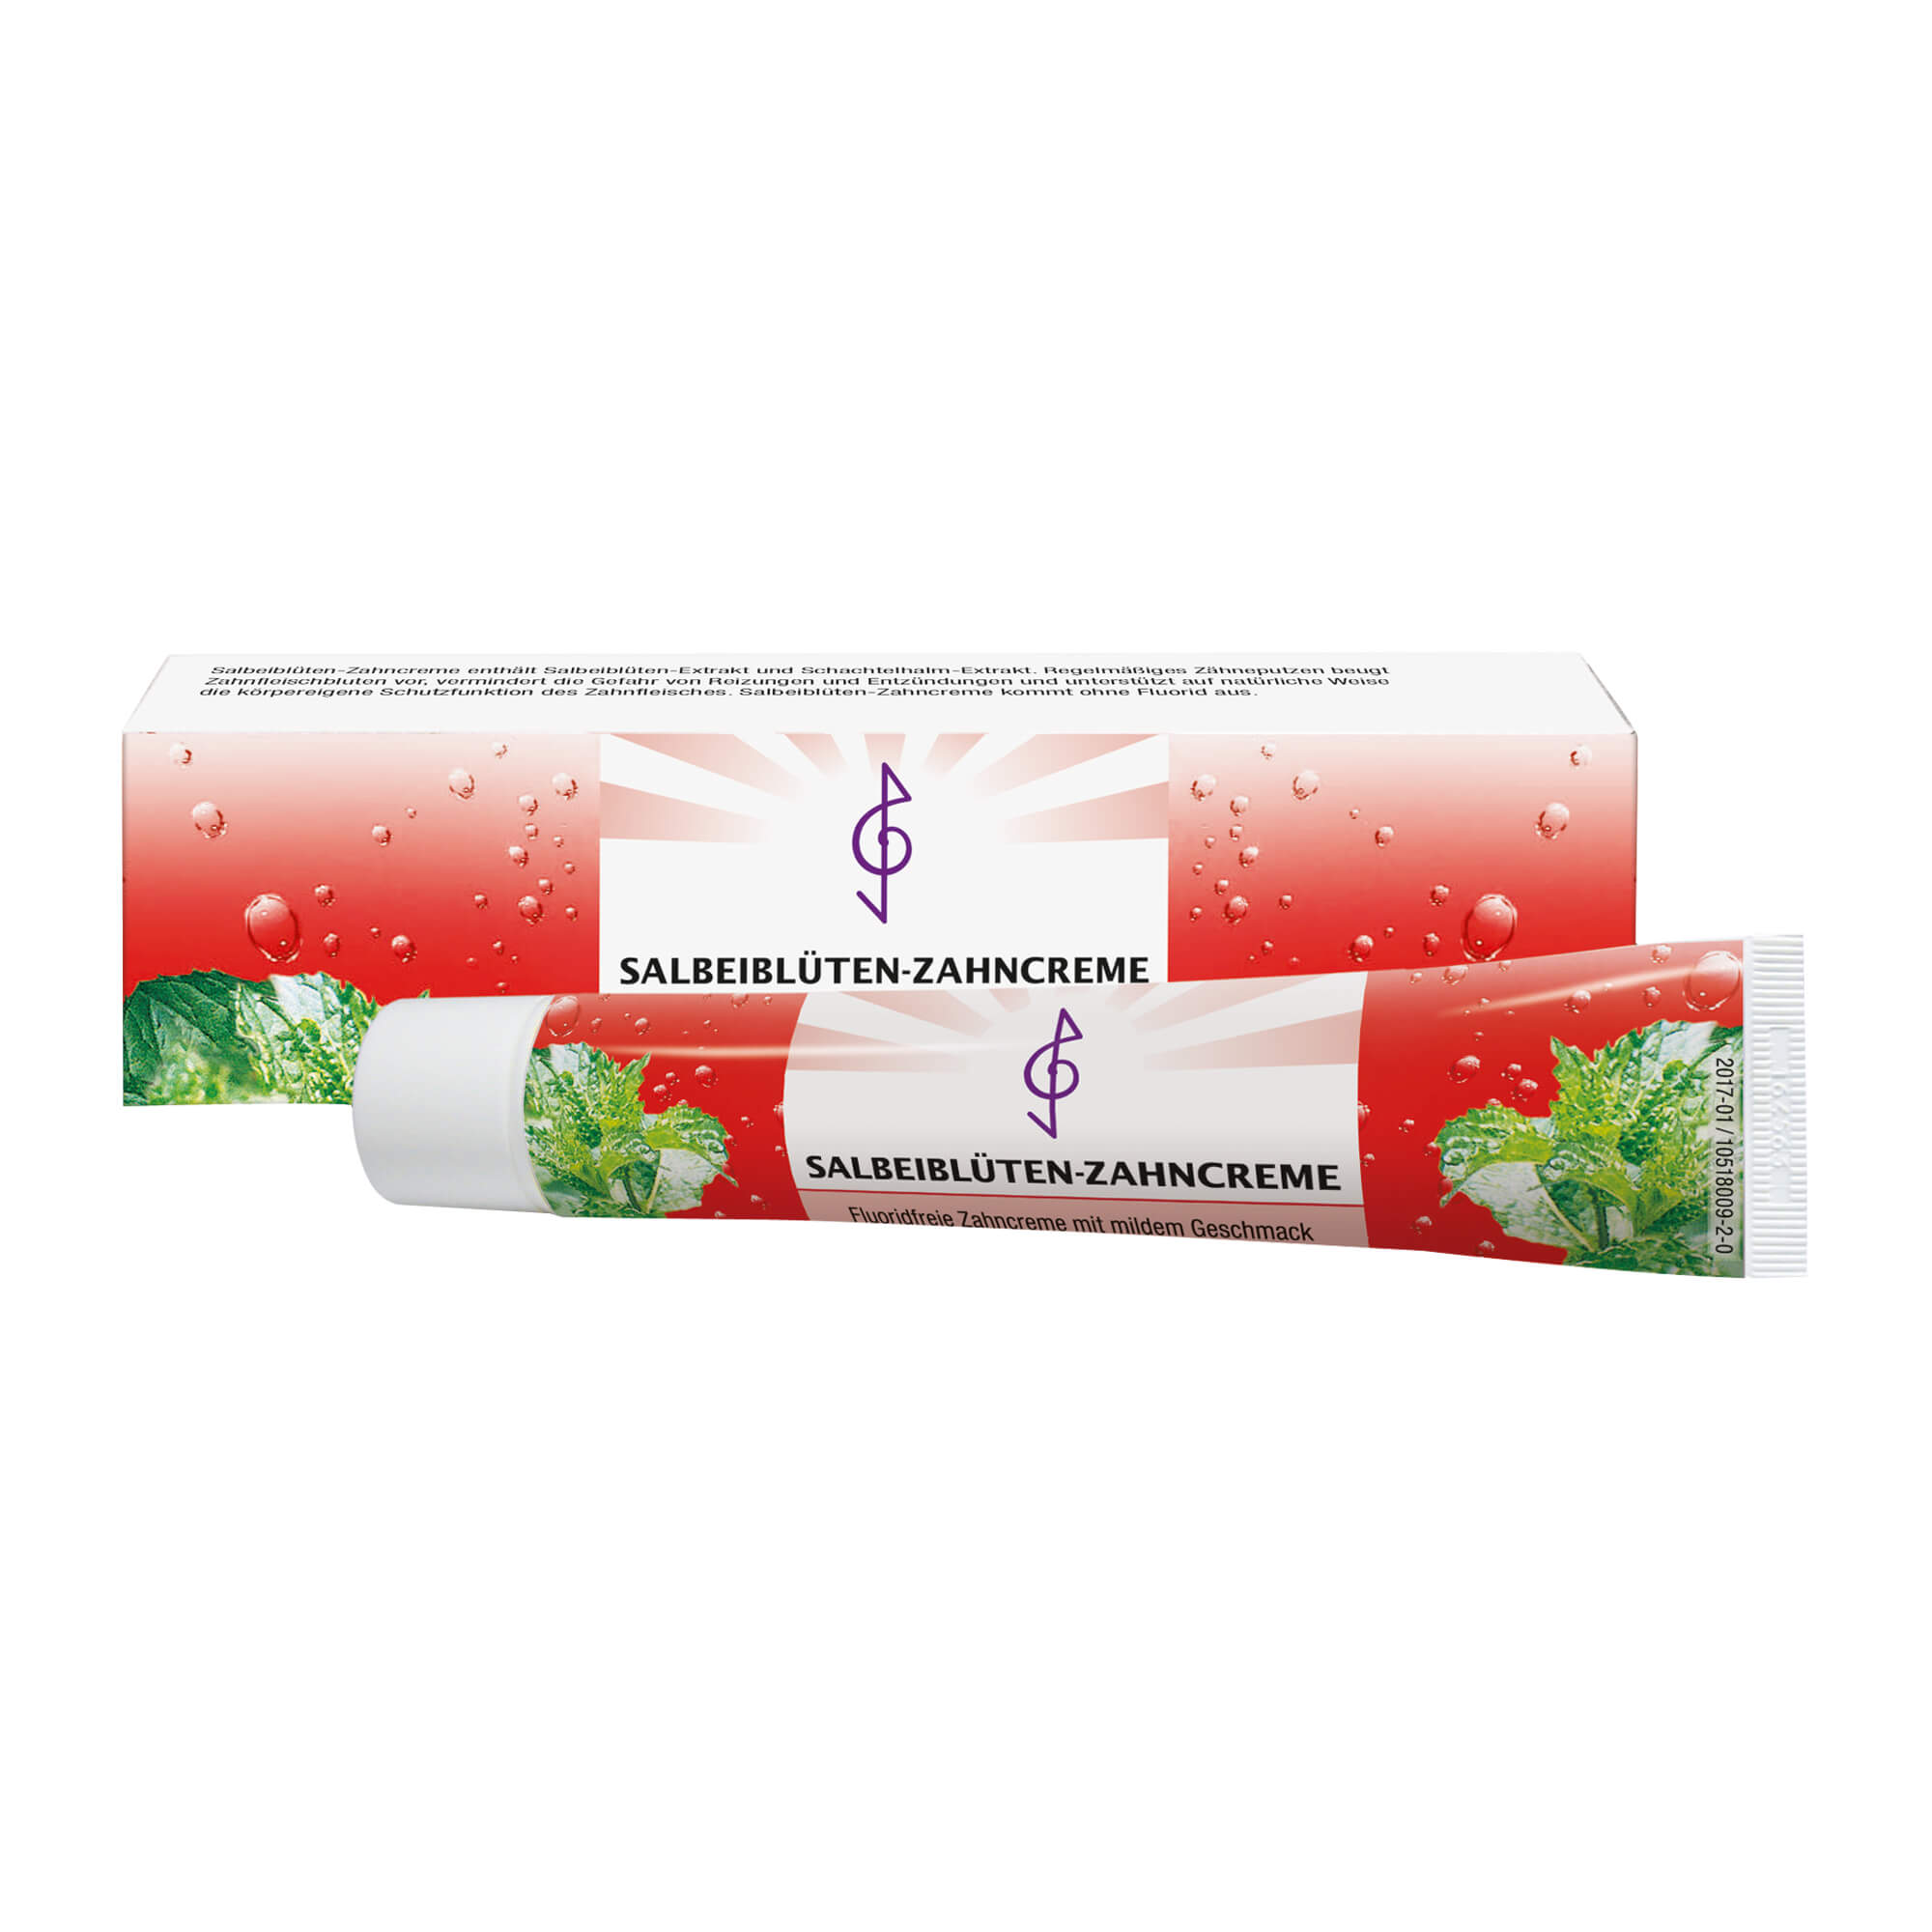 Fluoridfreie Zahncreme mit Salbeiblüten-Extrakt und Schachtelhalm-Extrakt.